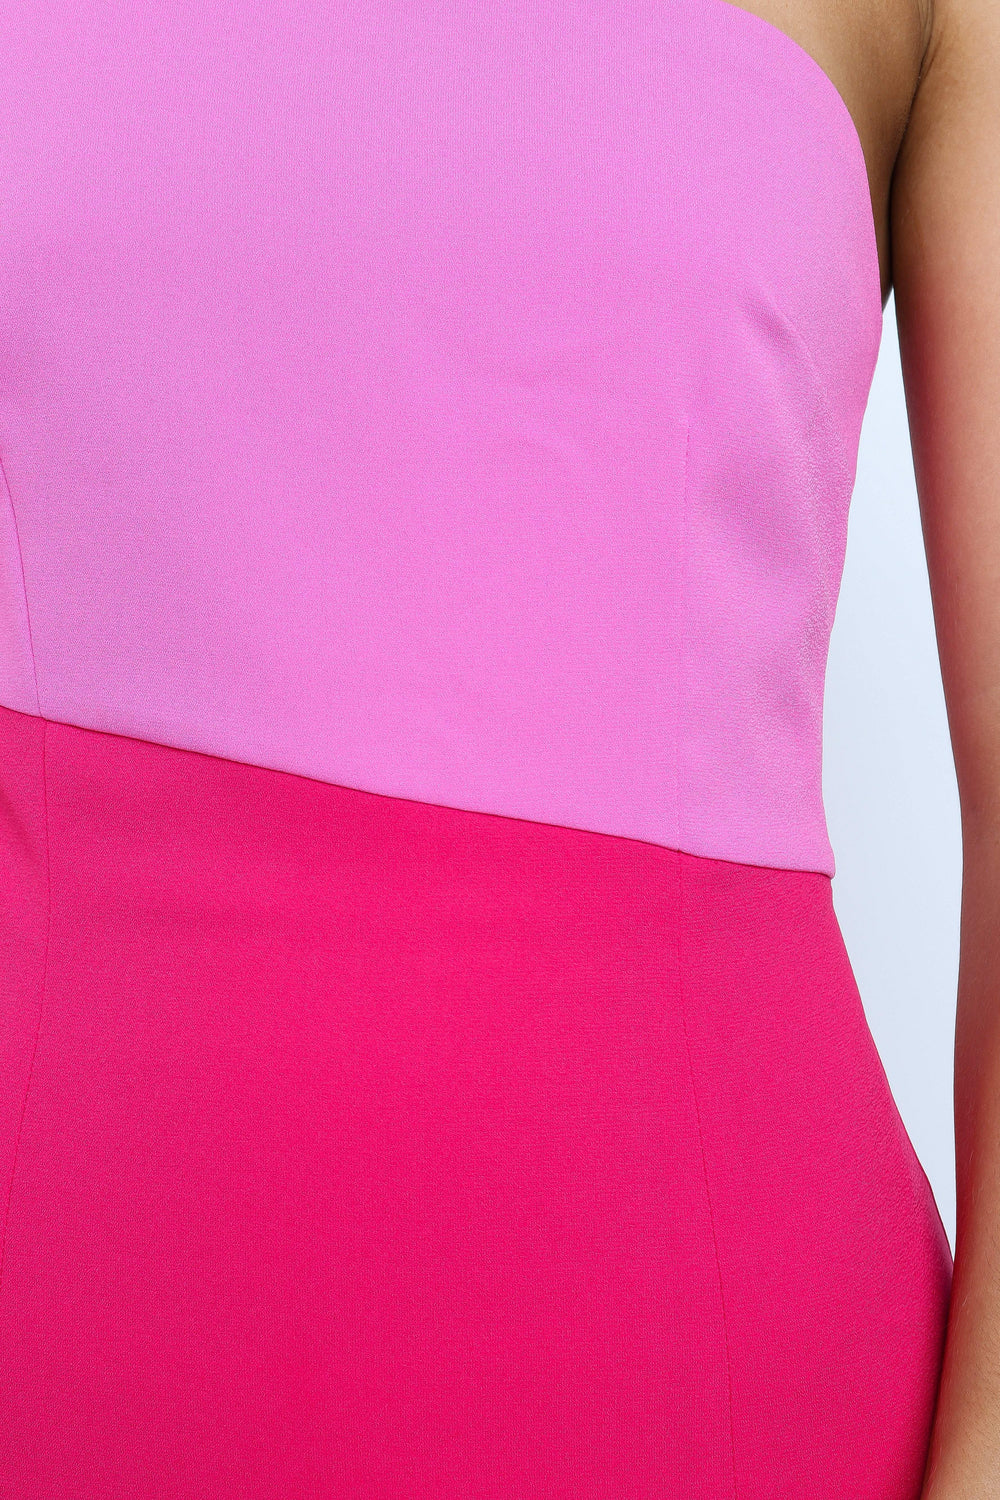 Dress Pup - & - USA Xiomar Petal Pink